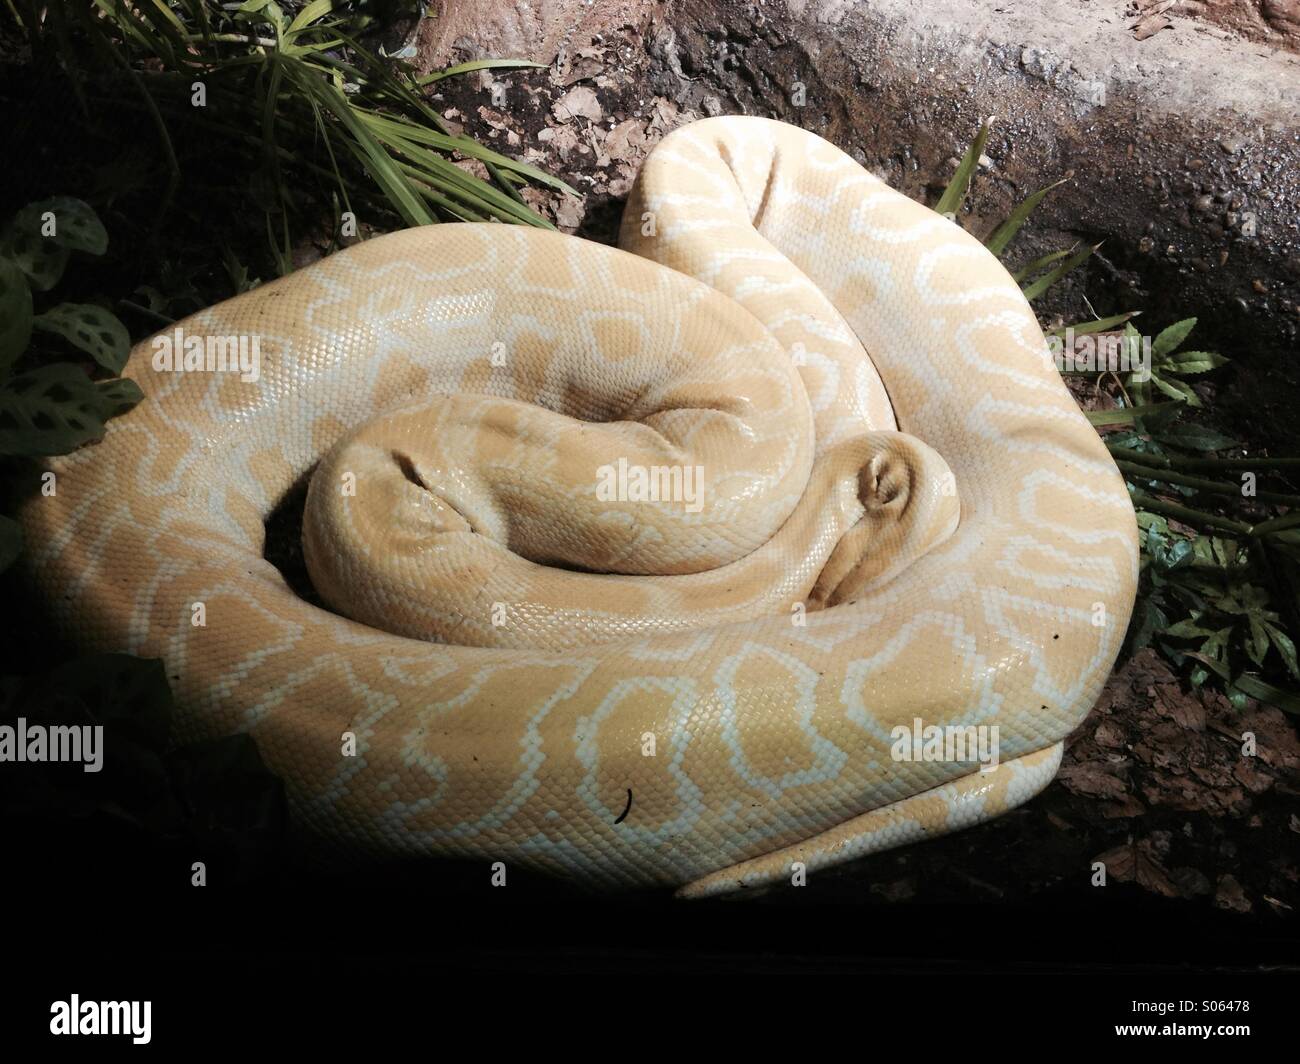 Ein Gelb Und Weiss Gemustert Boa Constrictor Schlange Eingeschlafen Und Zusammengerollt Stockfotografie Alamy